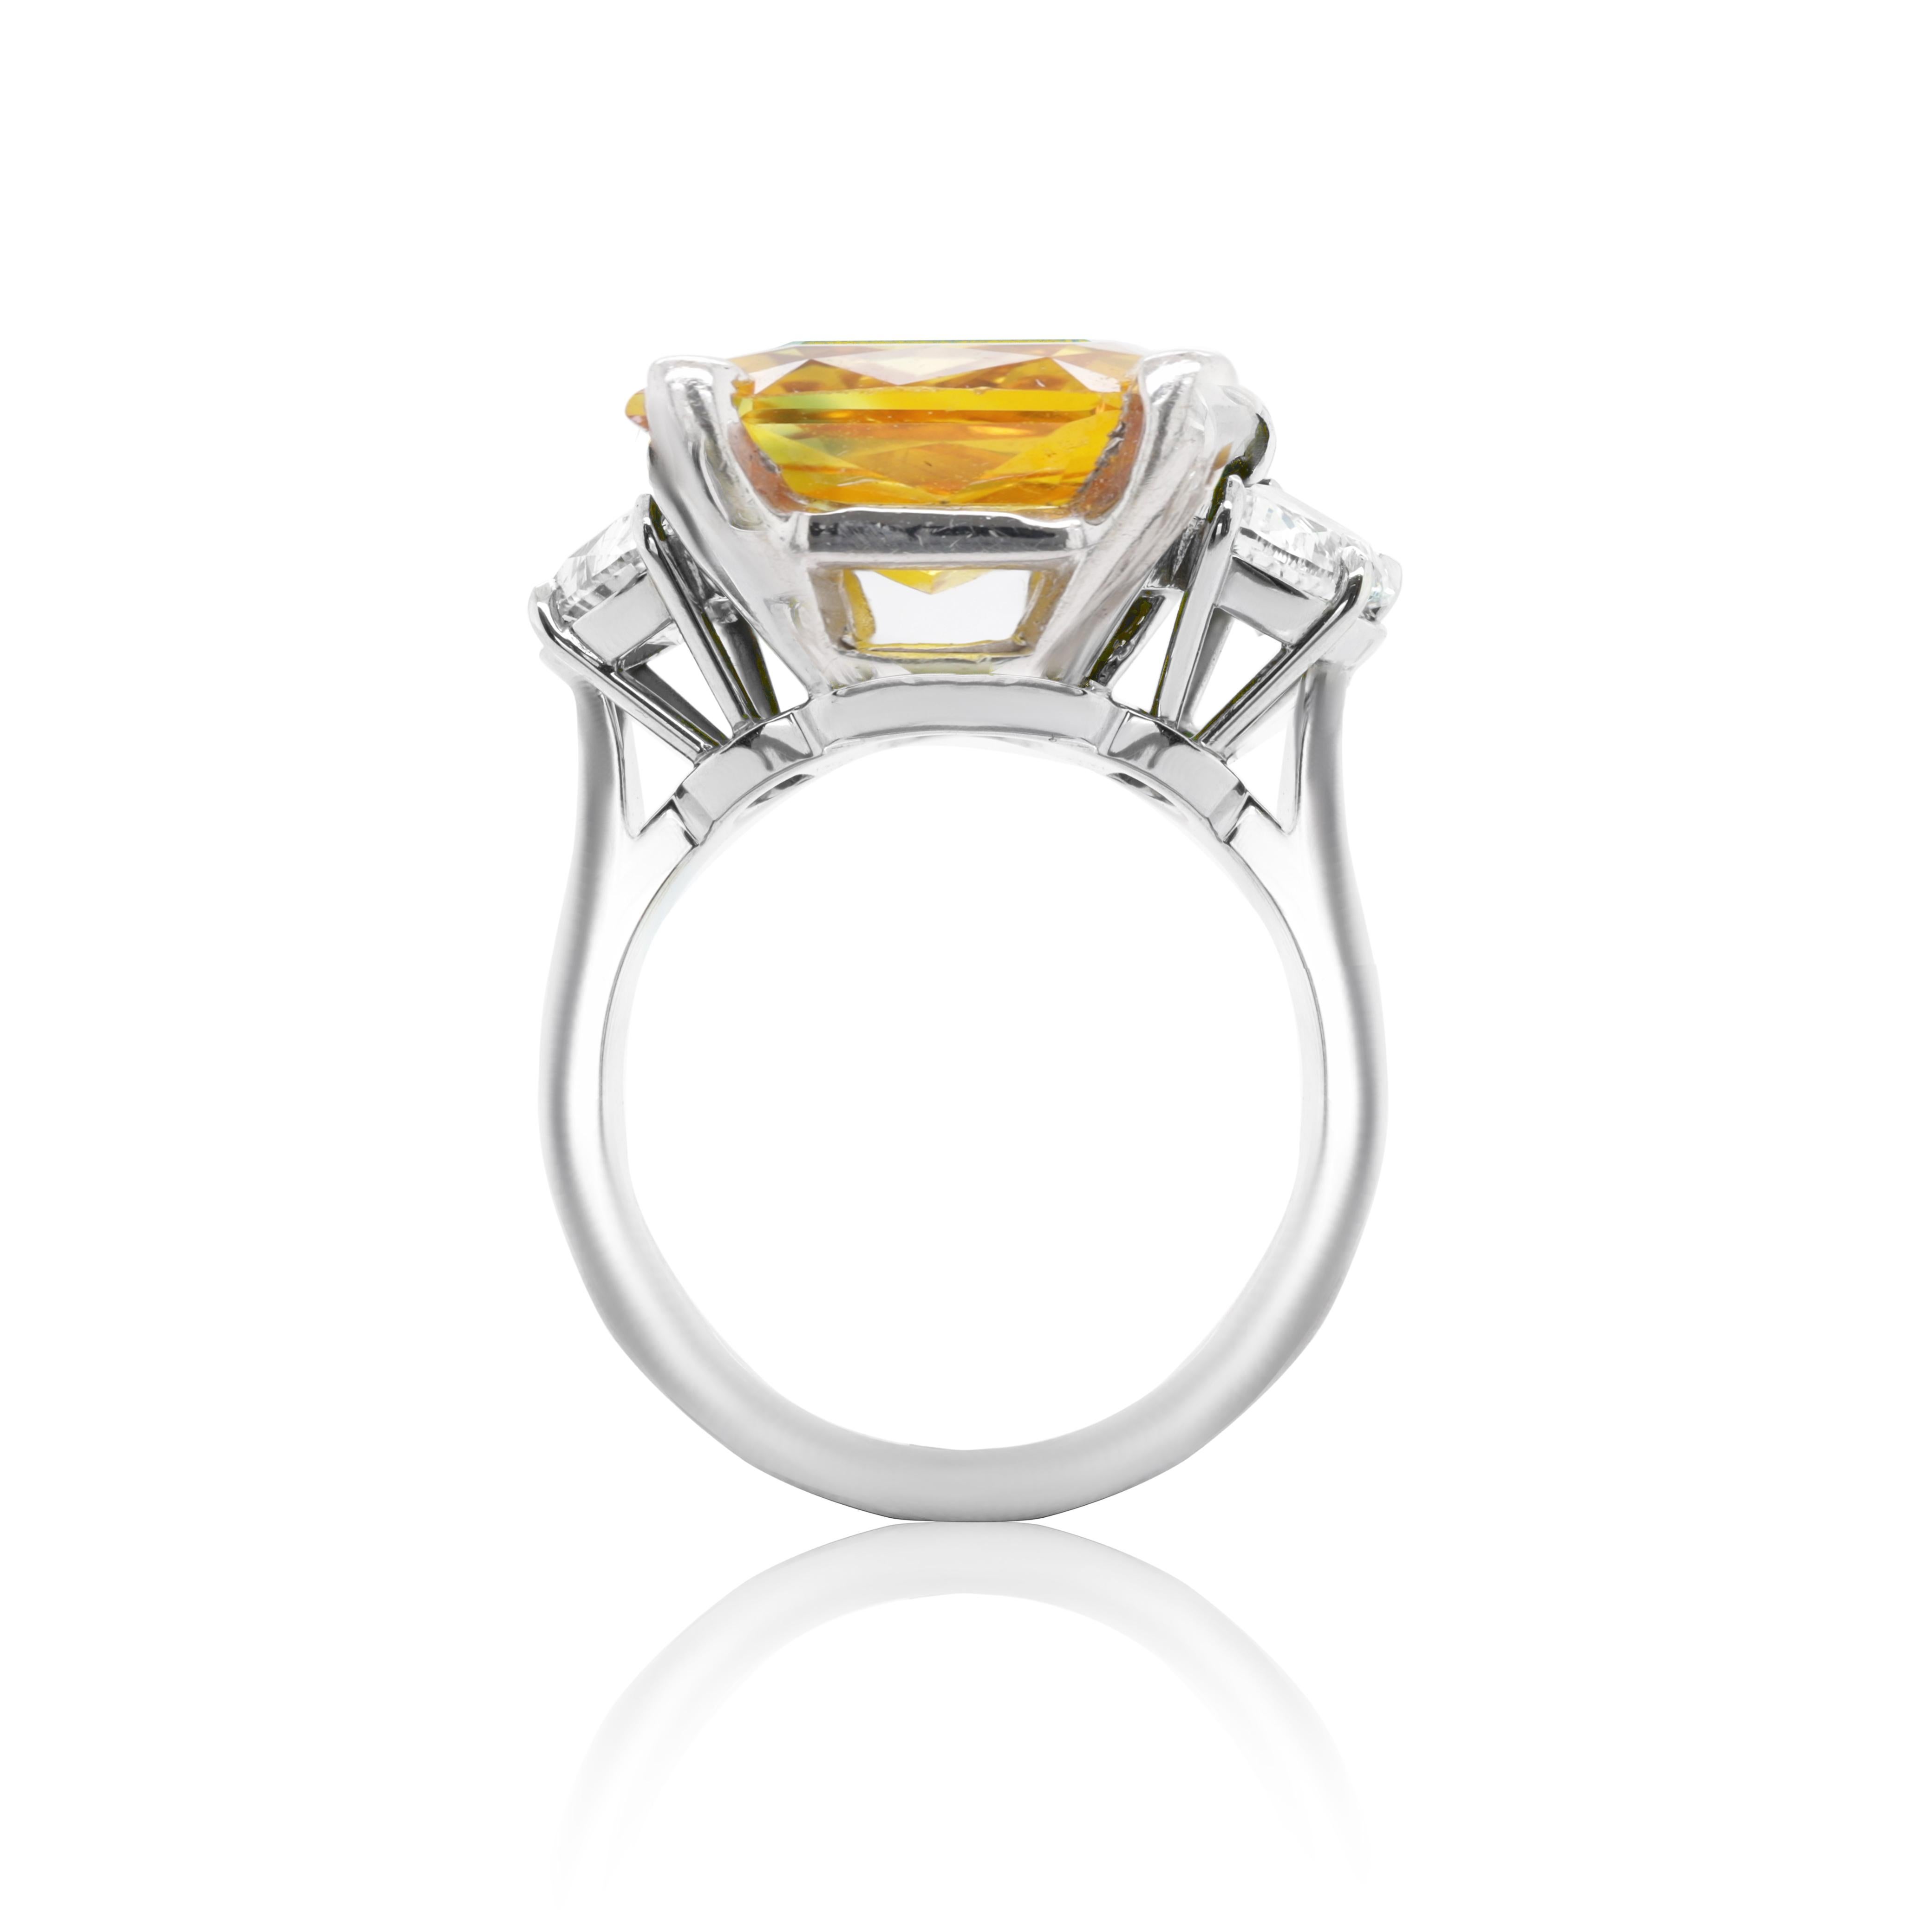 Saphir- und Diamantring aus 18 k Weißgold mit einem gelben orangefarbenen Saphir im Kissenschliff von 2,97 ct in der Mitte und 2 Diamanten im Baguetteschliff an der Seite von insgesamt 0,85 ct Diamanten (A.I.C. zertifiziert).
Diana M. ist seit über